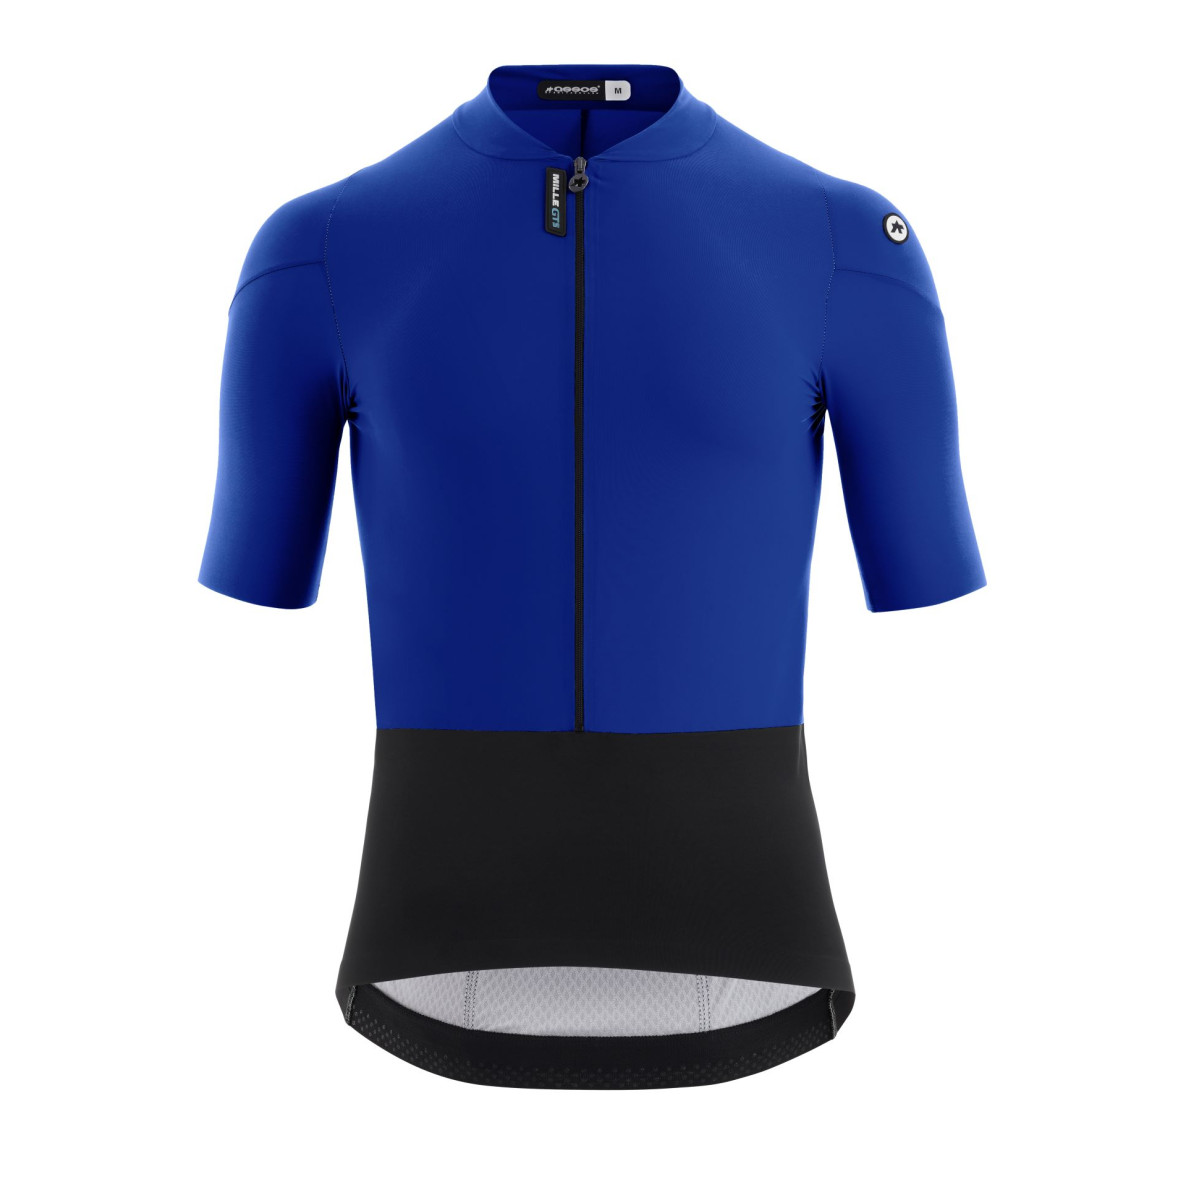 Assos Mille GTS C2 vyriški marškinėliai / French Blue